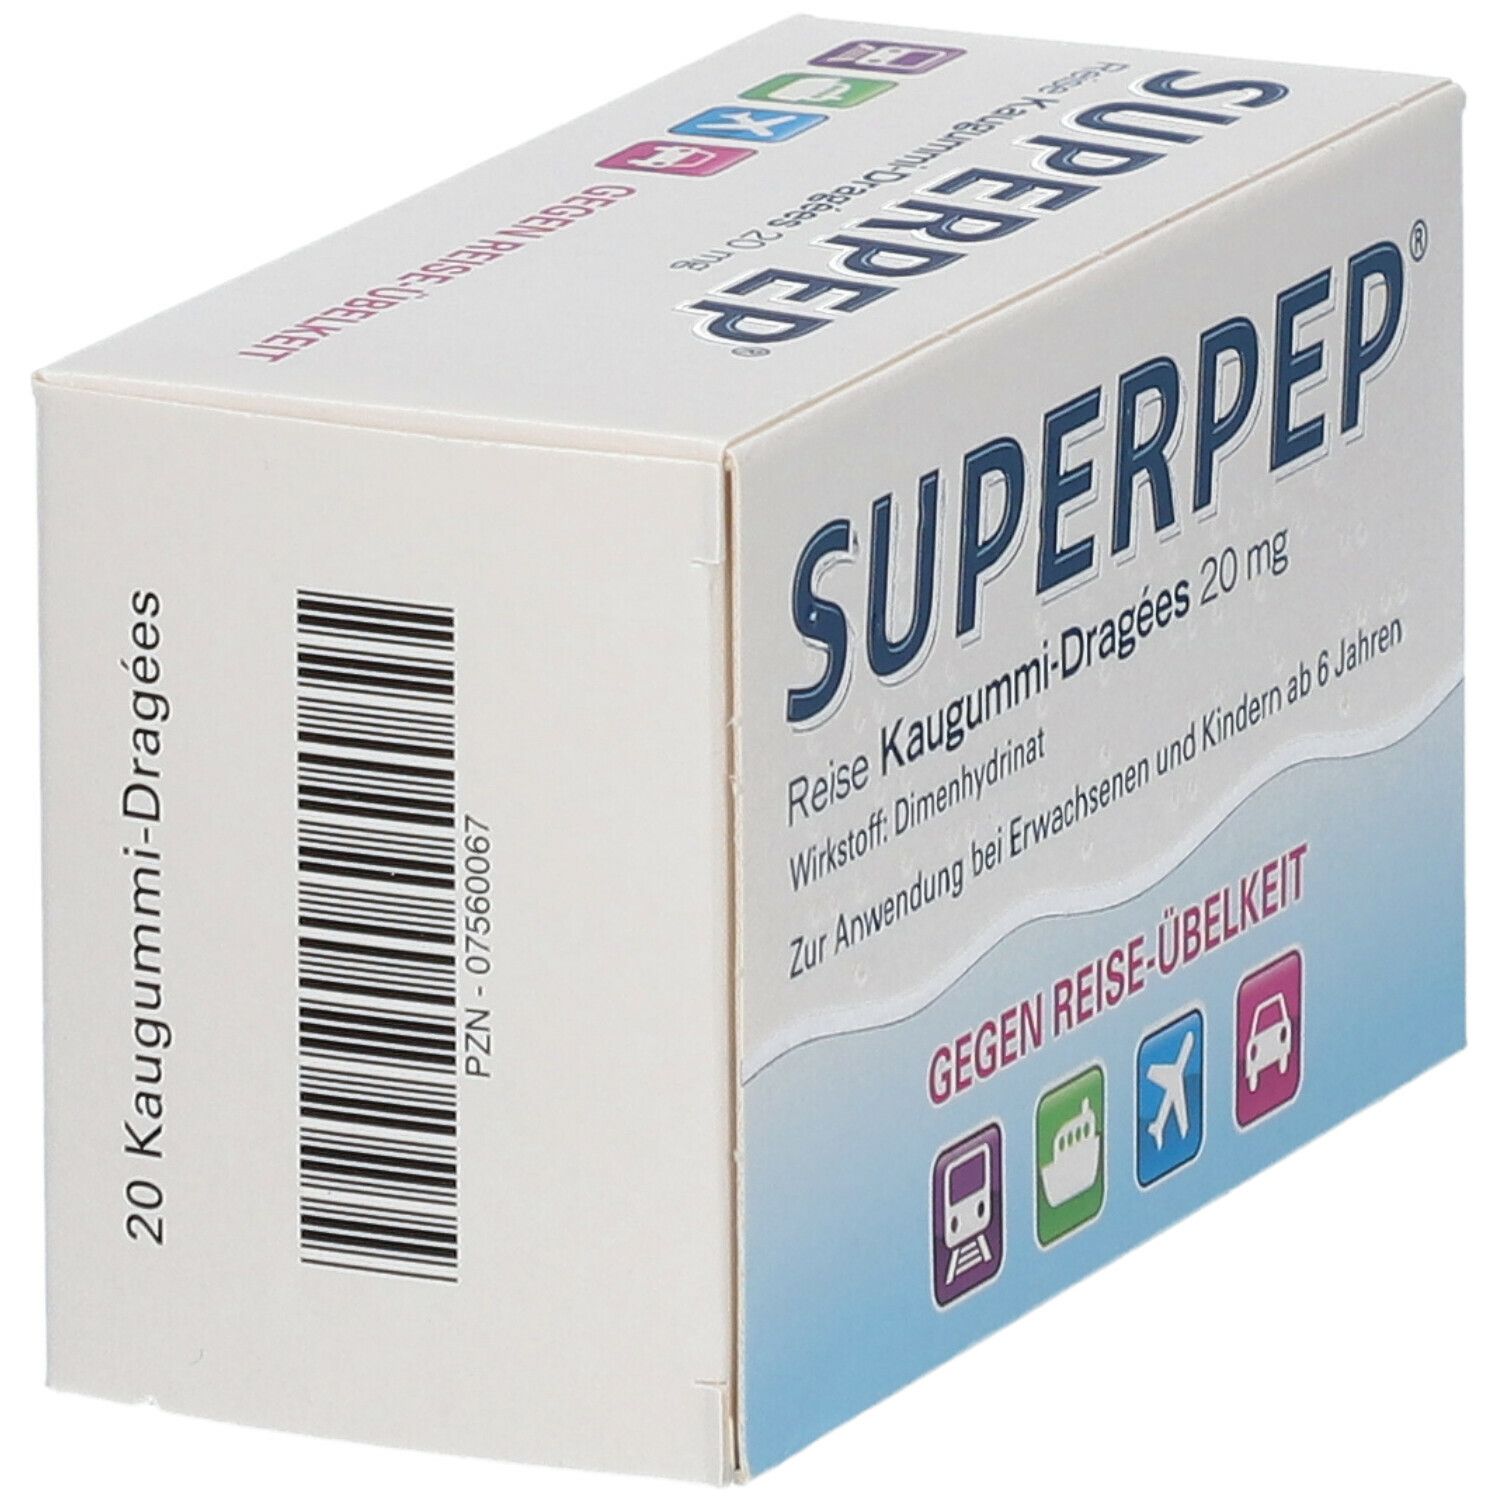 Superpep® Reise Kaugummi Dragees 20 mg